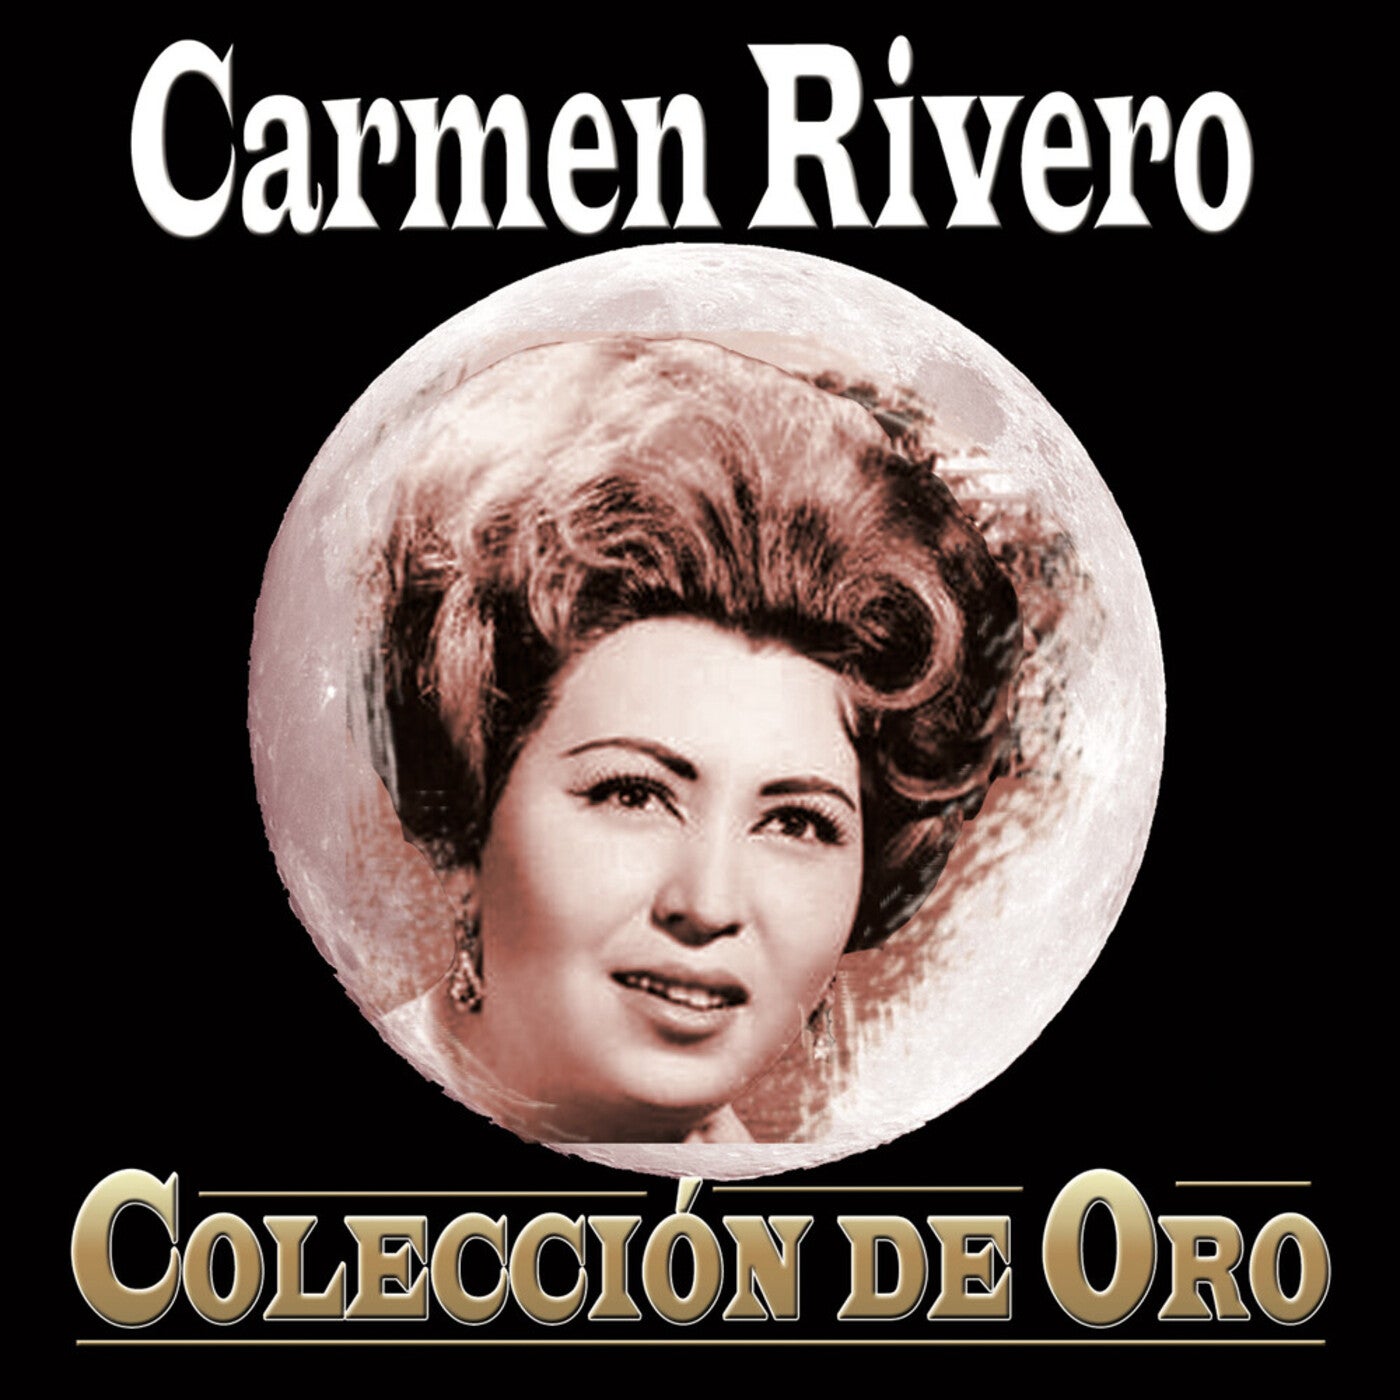 Carmen Rivero Colección De Oro by Carmen Rivero on Beatsource